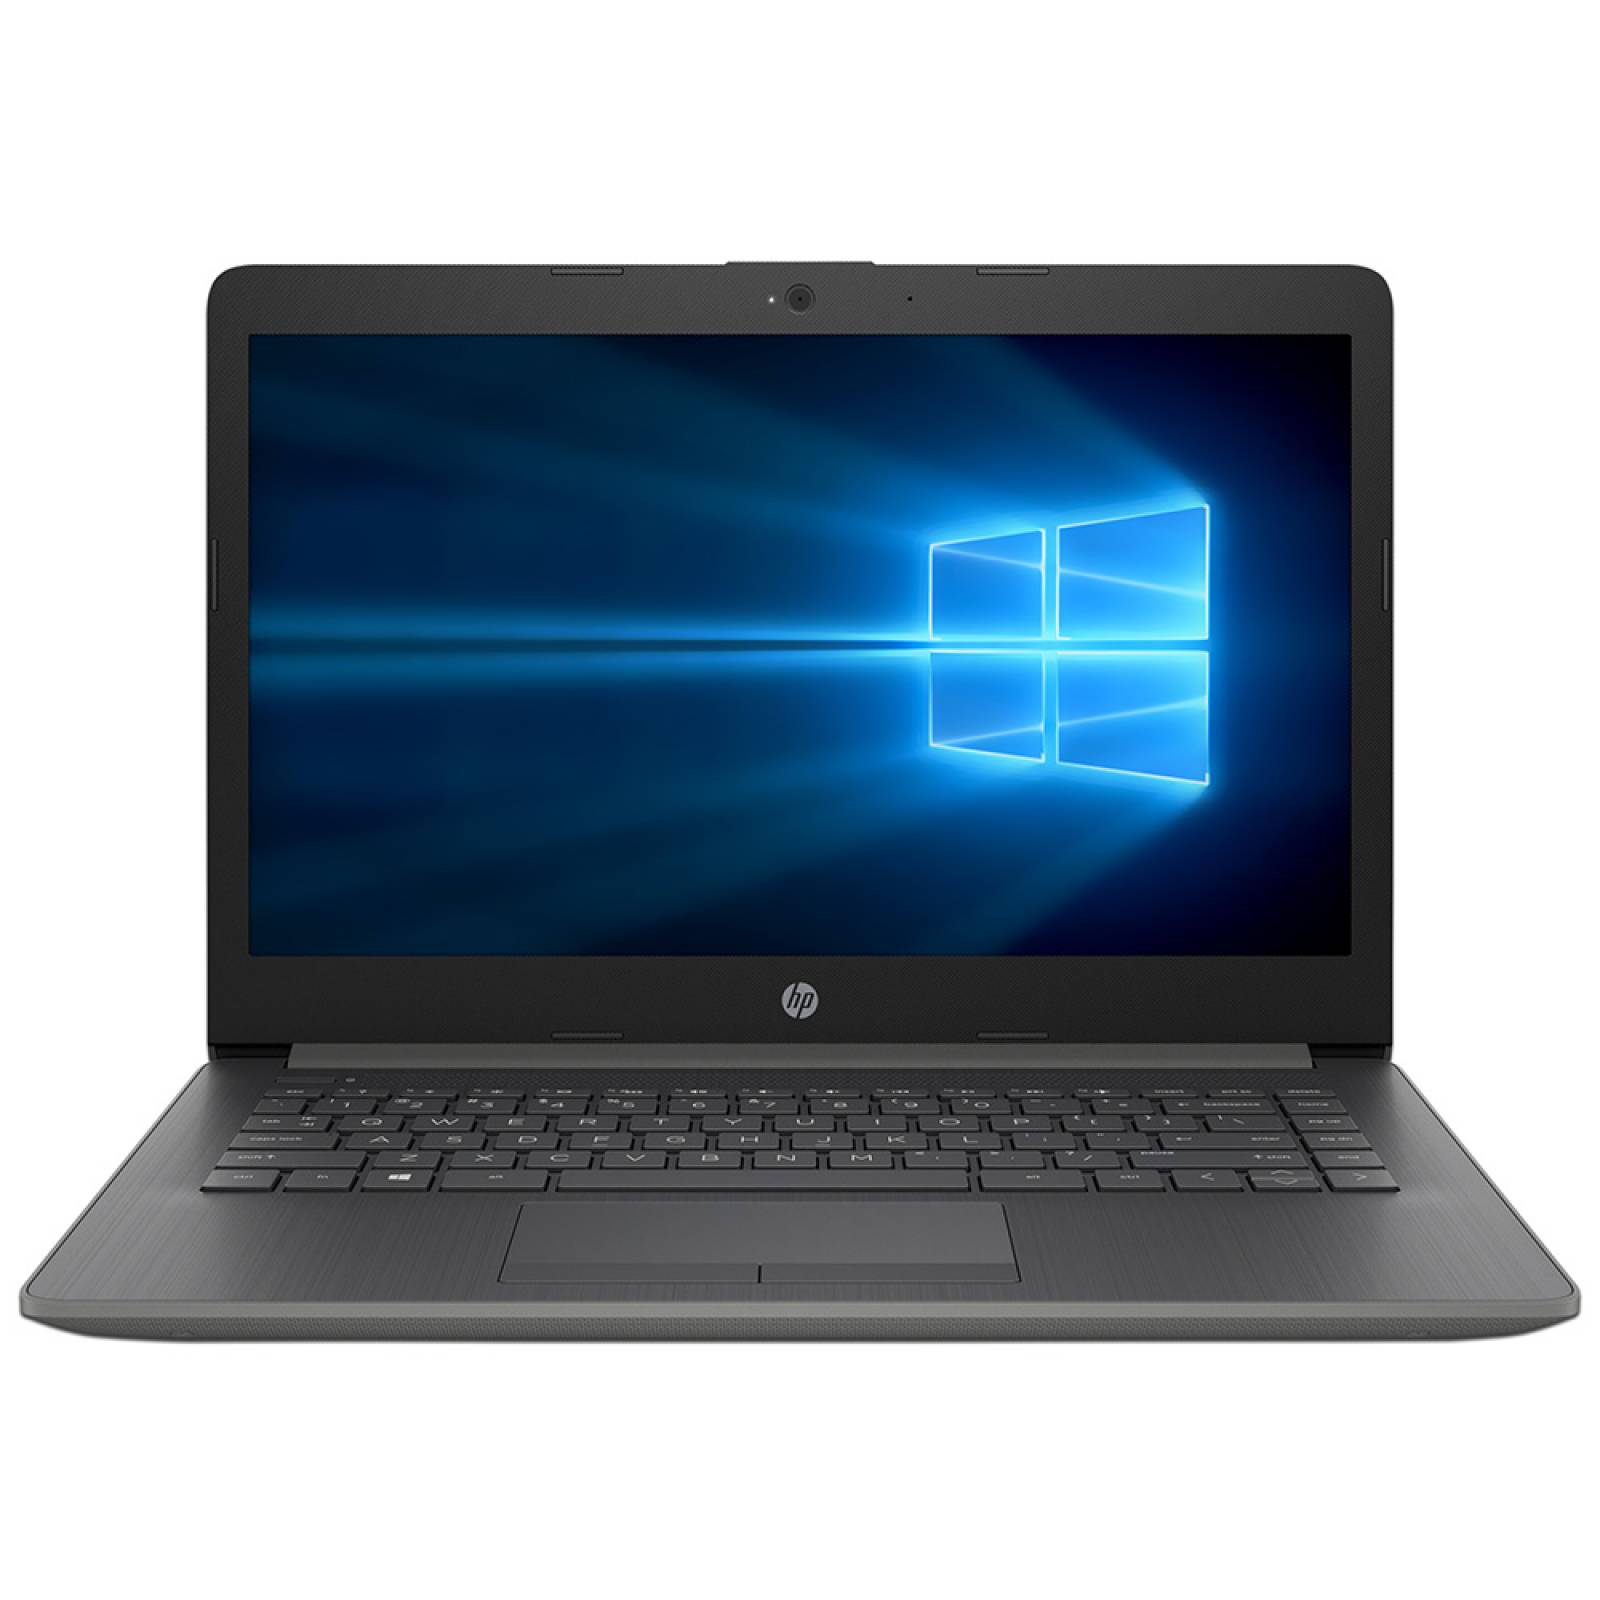 Laptop HP 14-ck1022la Procesador Intel Core i5 8265U Memoria de 4GB DDR4 Disco Duro de 1TB Pantalla de 14 pulgadas LED Video HD Graphics 620 S.O. Windows 10 Home